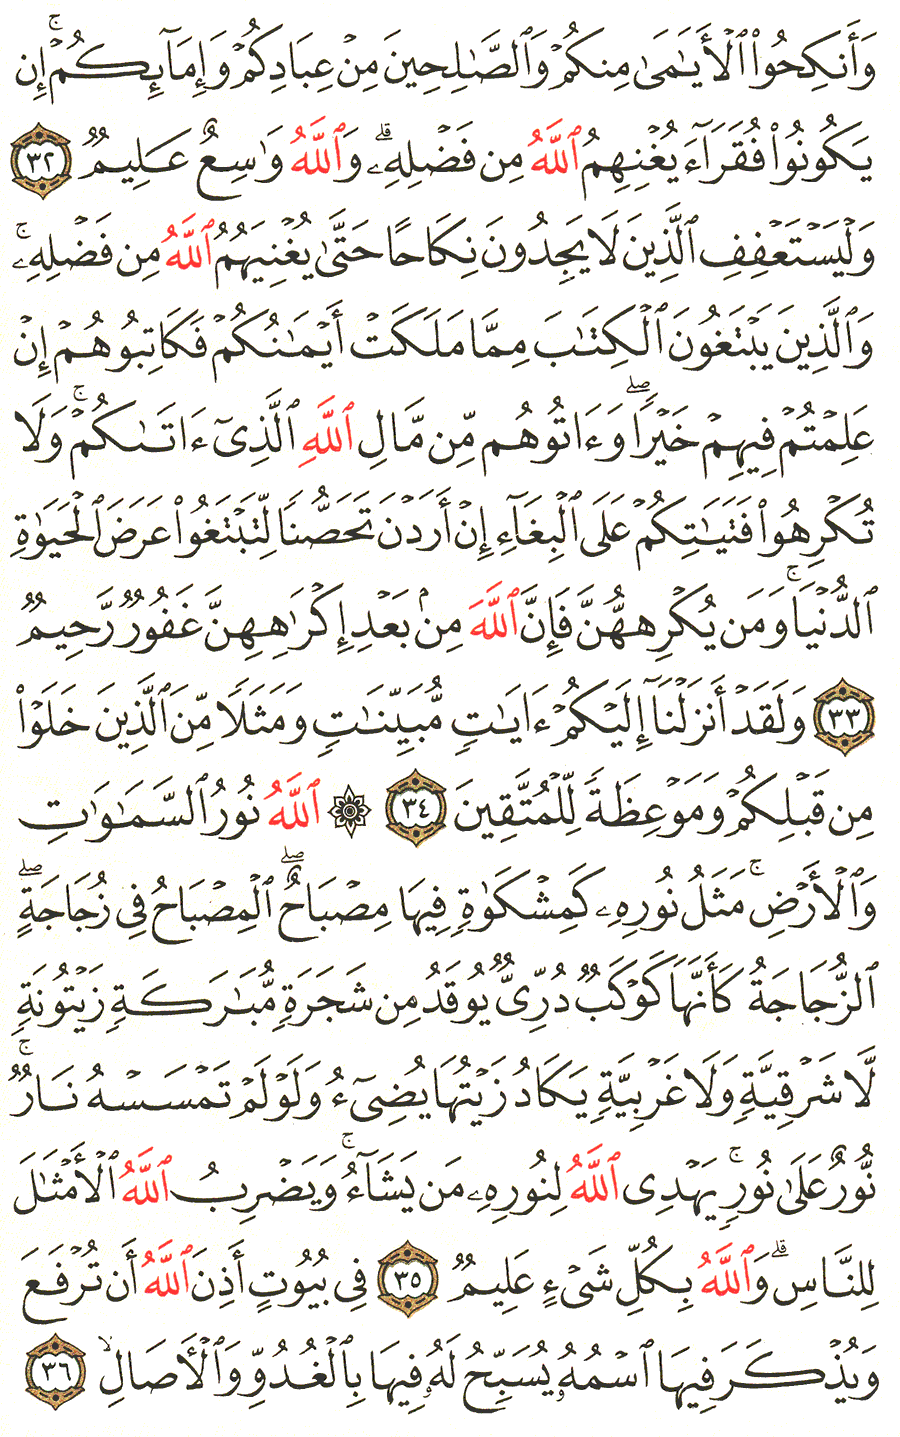 الصفحة 354 من القرآن الكريم